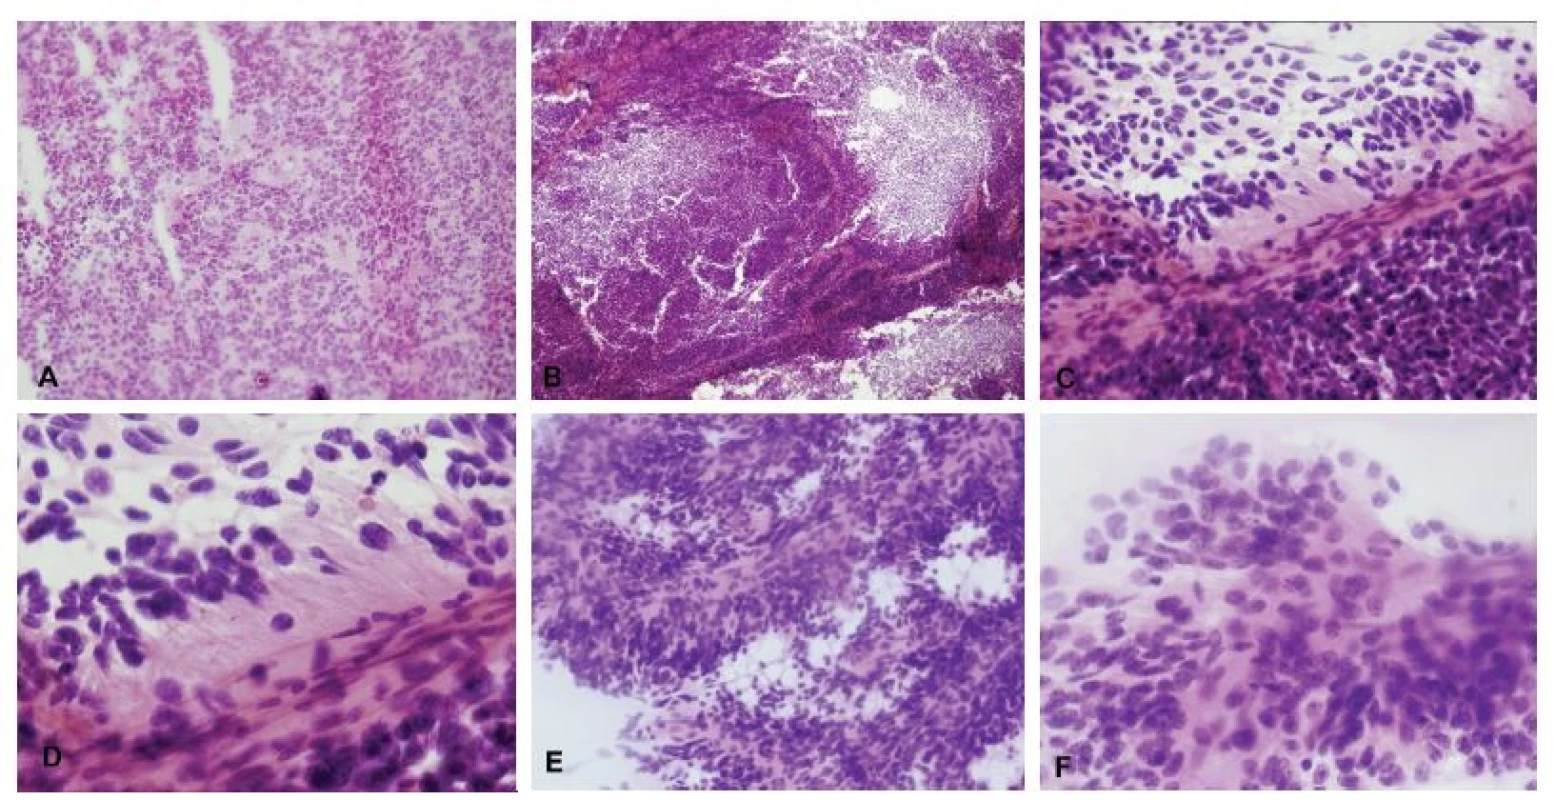 (A-D) Tumor IV. komory u 31-ročného muža. V zmrazenom reze bol zachytený výrazne celulárny tumor, ložiskovo s perivaskulárnymi pseudorozetami
(A). V nátere sa nádorové bunky „držia“ okolo ciev (B). Perivaskulárne pseudorozety – nádorové bunky sú k cievam prichytené gliálnymi výbežkami, jadrá sú
zoradené periférne (C, D). Pre vysokú celularitu a pomerne výrazné jadrové atypie bol nádor peroperačne nesprávne diagnostikovaný ako medulloblastóm.
Definitívna diagnóza: anaplastický ependymóm, grade III. (E, F) V inom prípade prítomnosť typických buniek s okrúhlymi jadrami a „salt and pepper“ chromatínom
umožnila správnu peroperačnú diagnózu ependymómu.